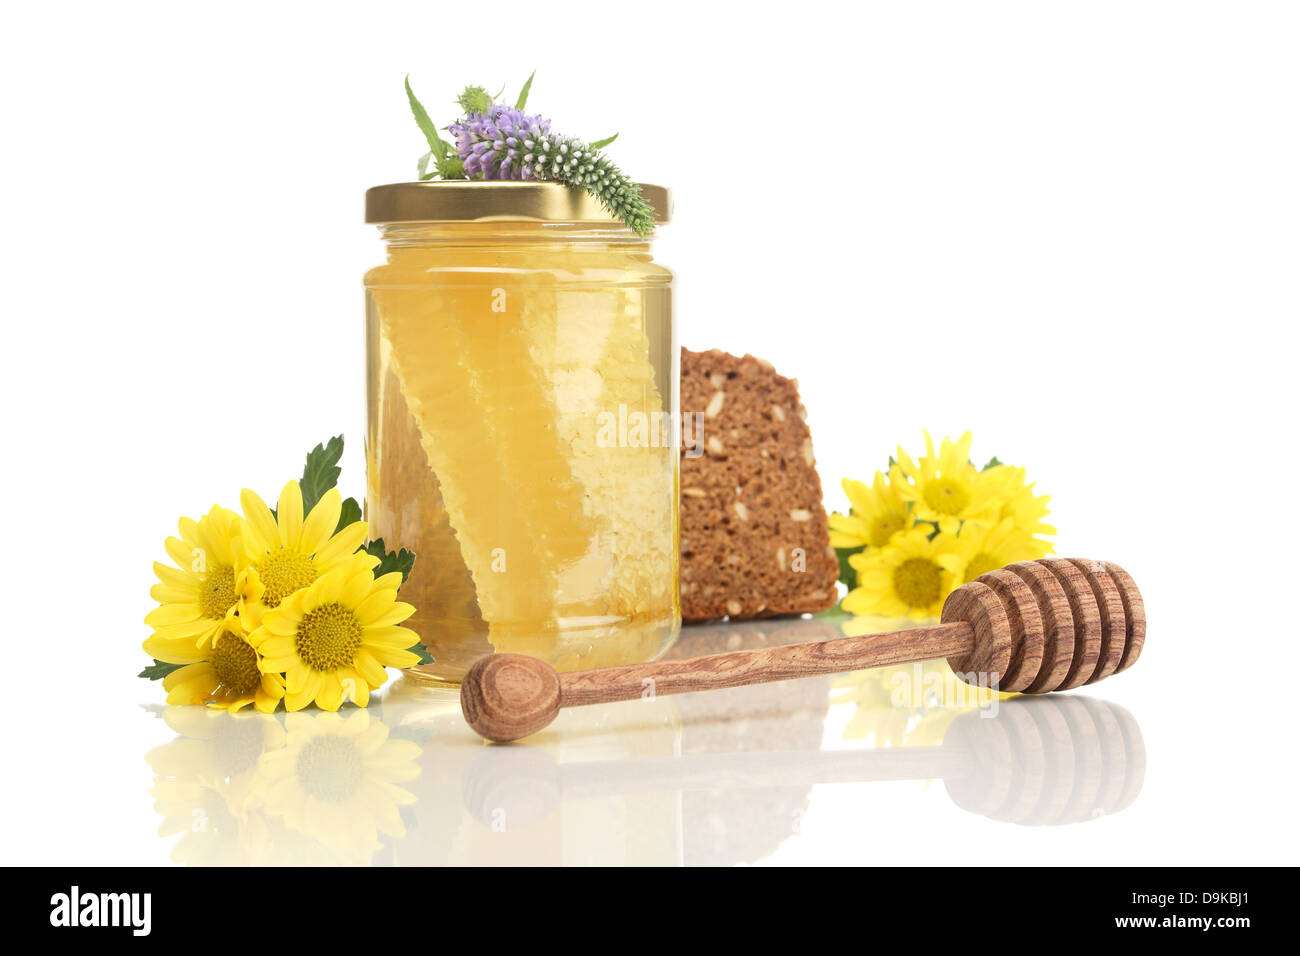 De miel en rayon avec du pain complet, du miel et des fleurs, une cuillère de miel en rayon avec du pain complet, du miel et des fleurs spoon Banque D'Images